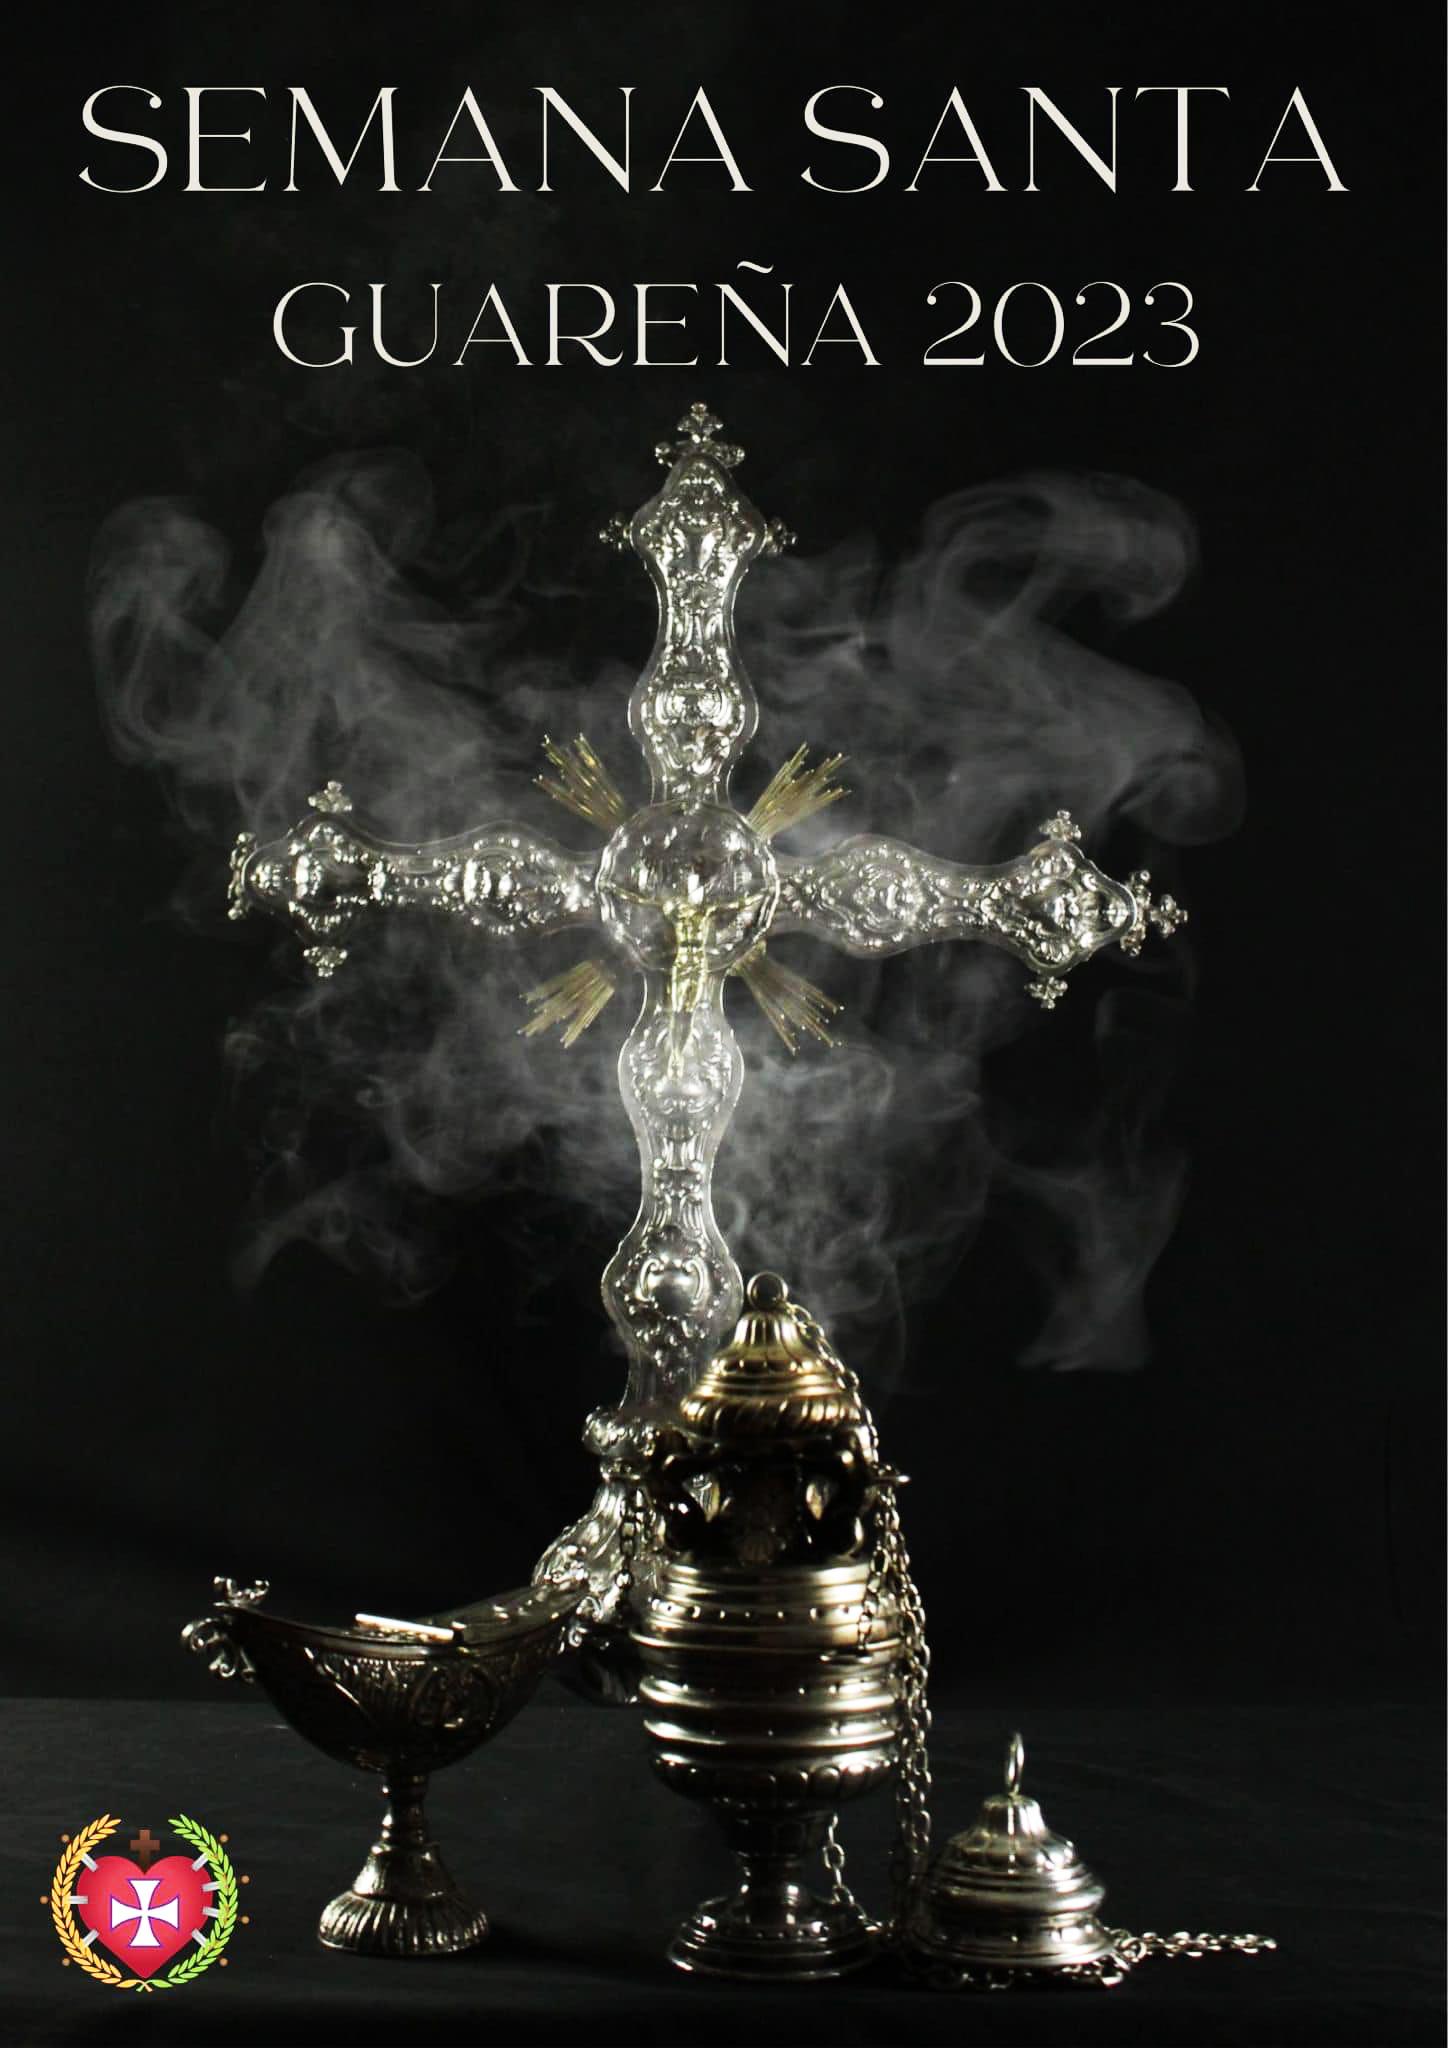 Semana Santa 2023 en Guareña